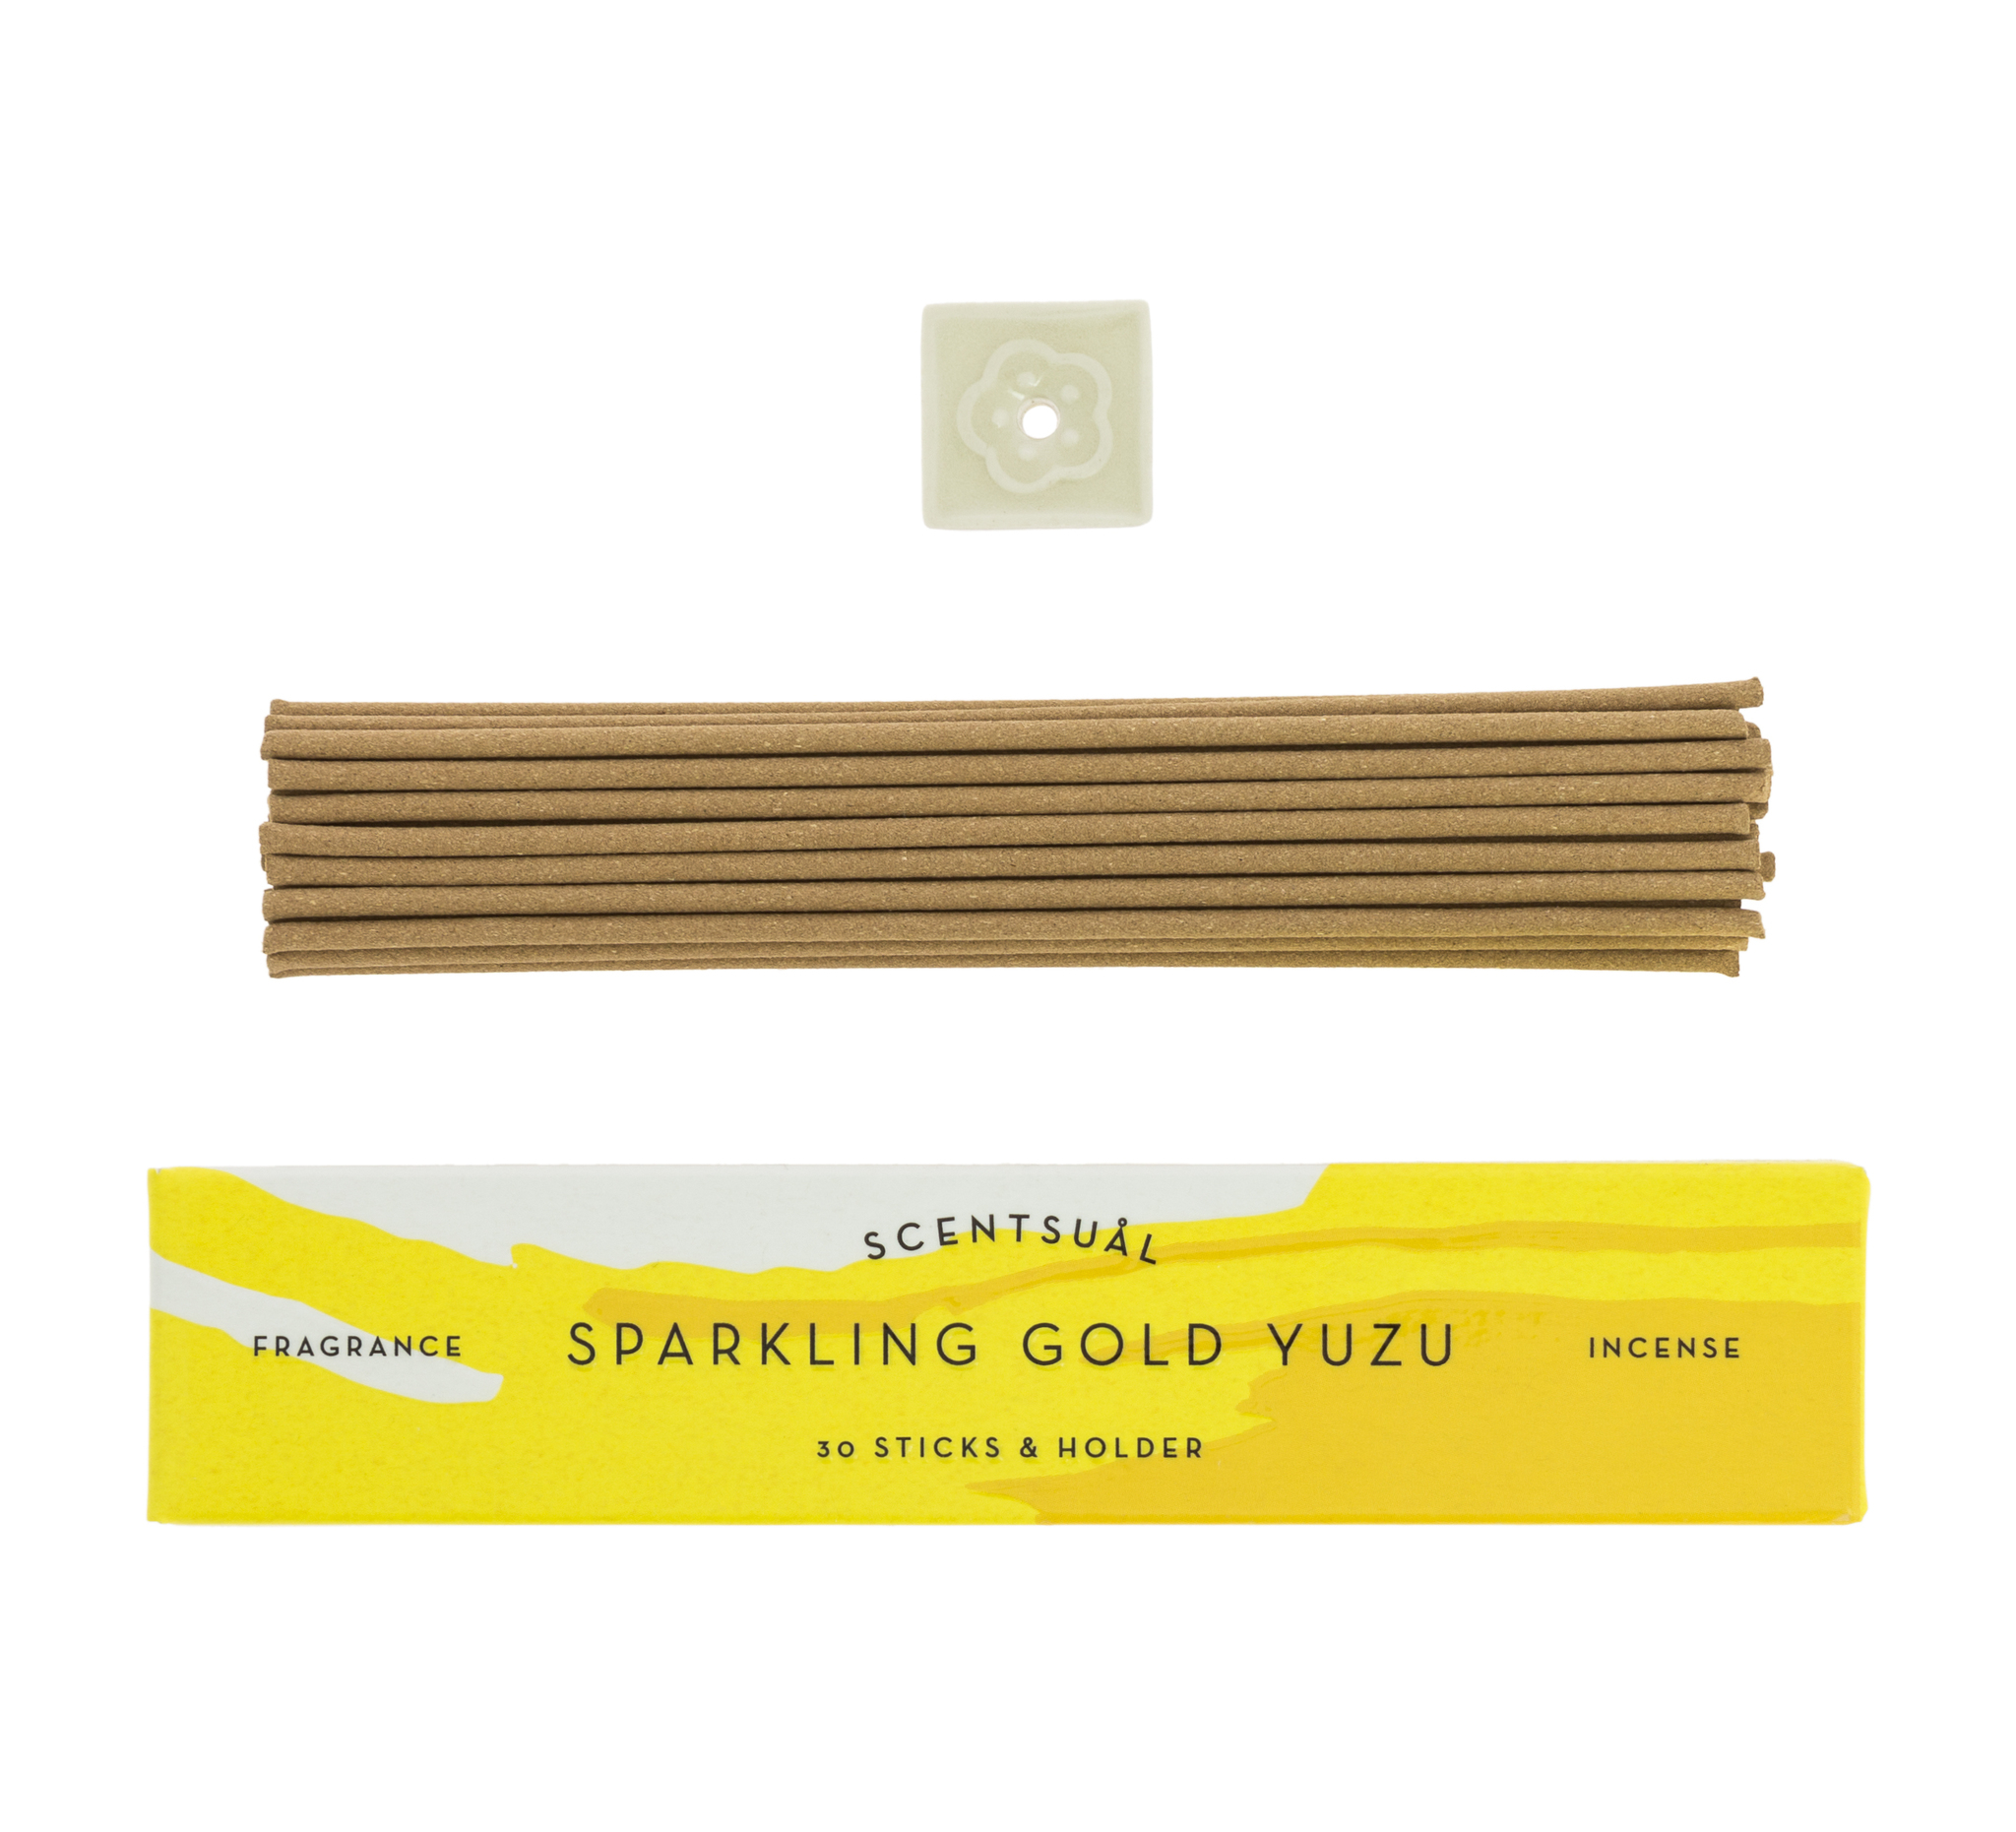 Благовоние Sparkling Gold Yuzu (юдзу, мандарин, танжерин, апельсин), 30 палочек по 13,5 см, 30, Sparkling Gold Yuzu